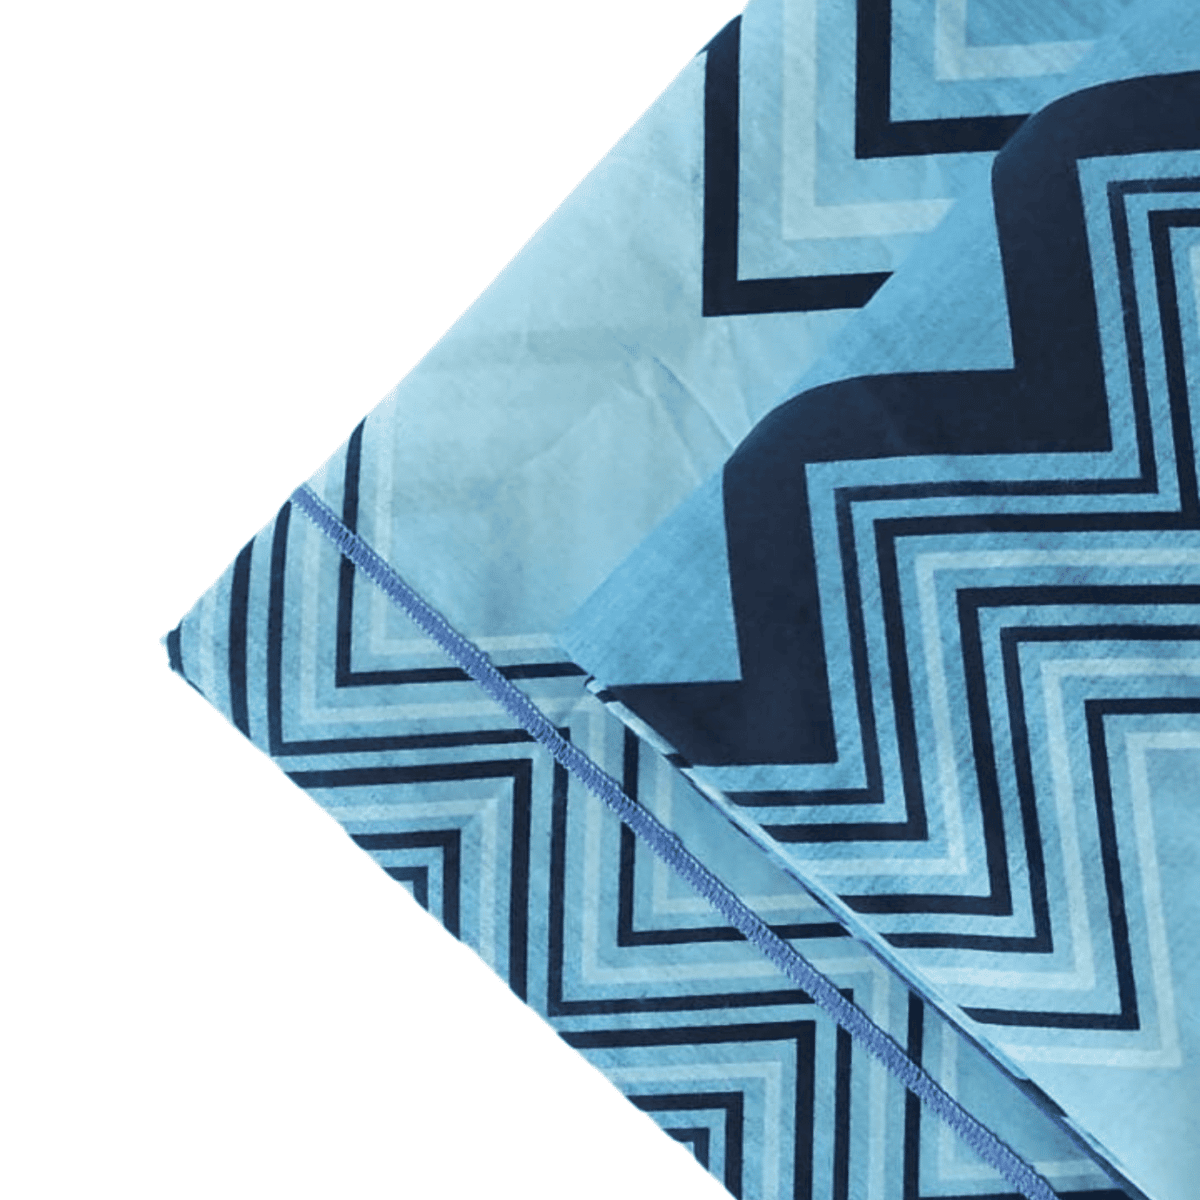 rio-blu-completo-lenzuola-puro-cotone-made-in-italy-quadrifoglio-blu-azzurro-celeste-sfumato-zig-zag-chevron-geometrico-moderno-dettaglio